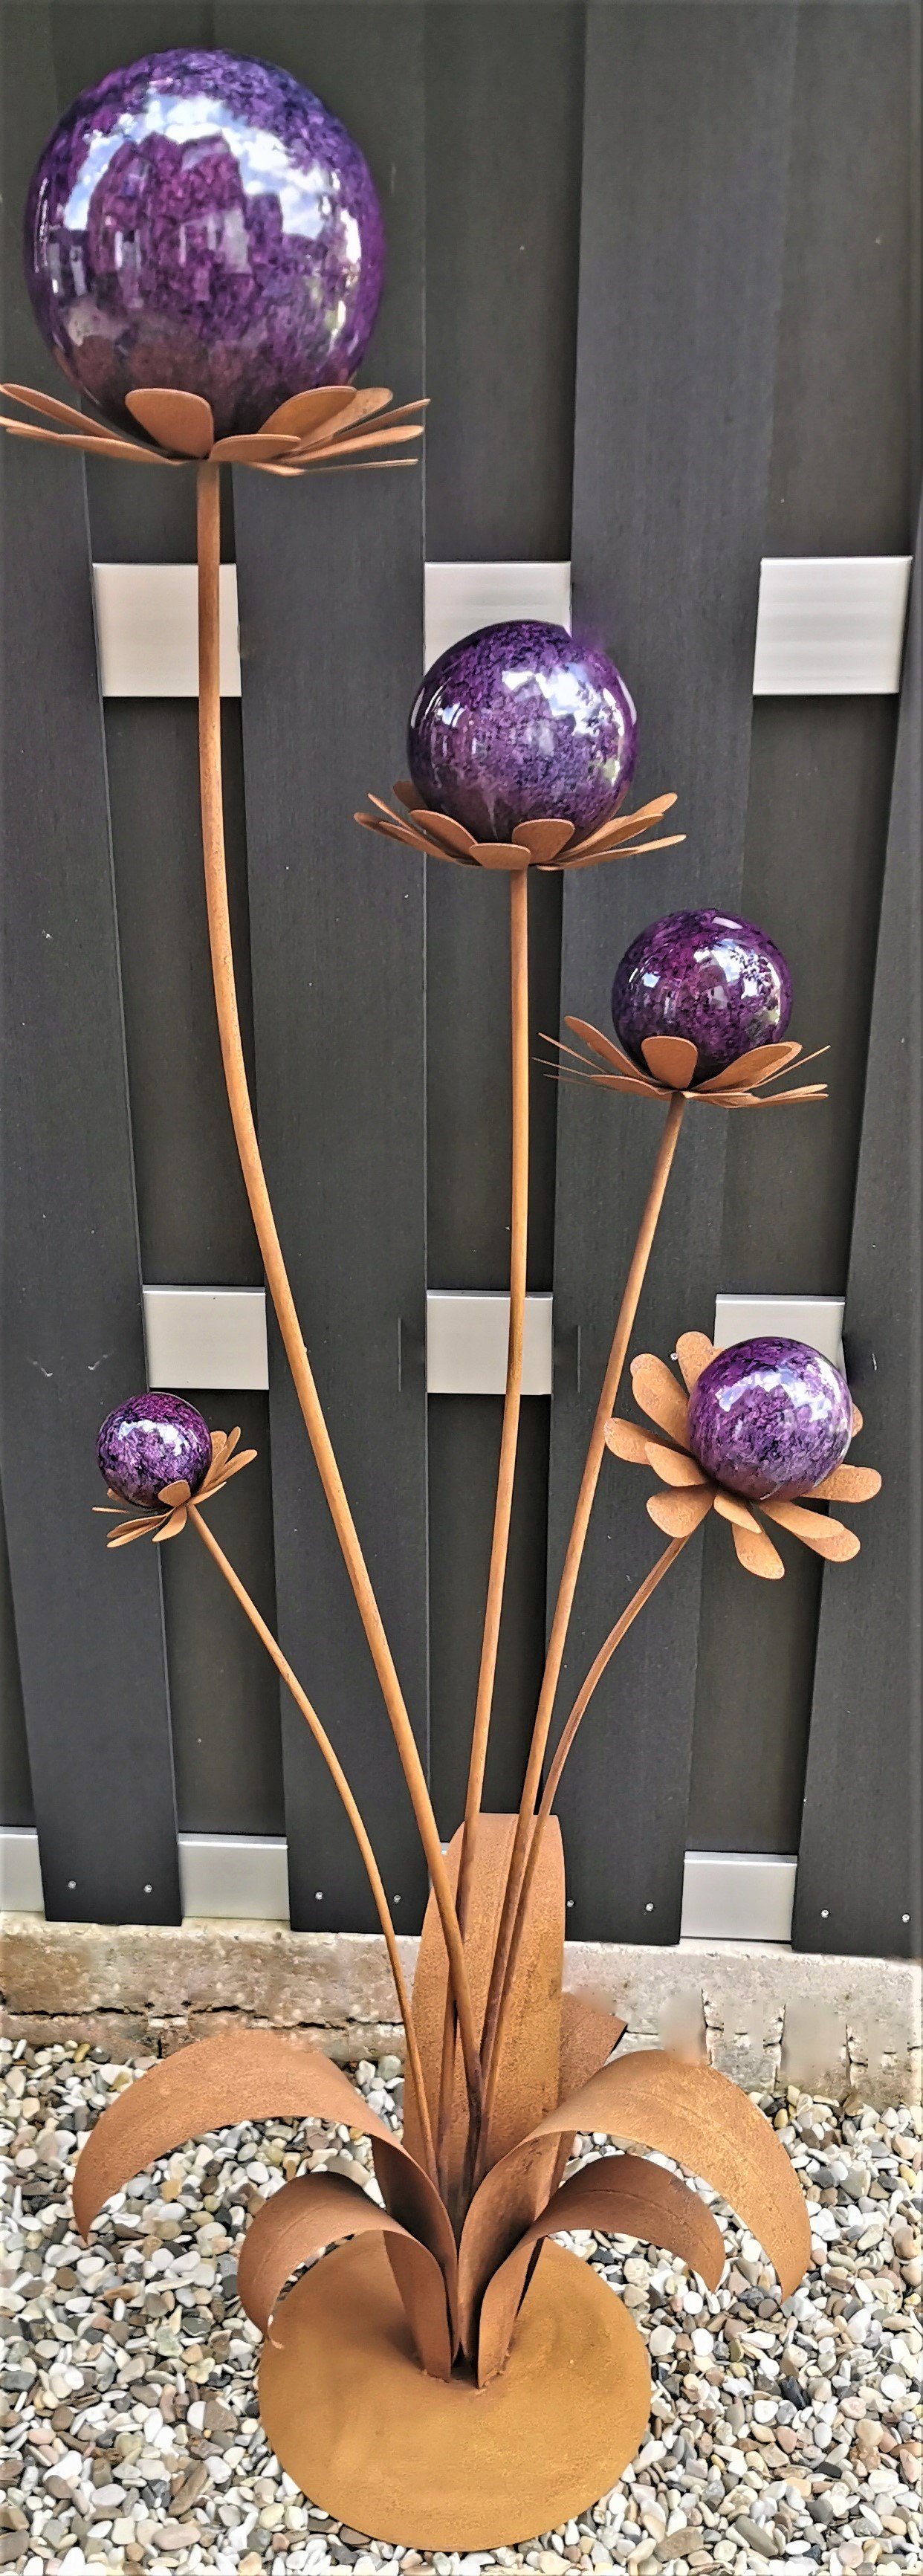 Jürgen Bocker Garten Corten Cortenstahl und Standfuß Garten-Ambiente Blume Gartenstecker mit 165 Barcelona violett cm Kugel Skulptur